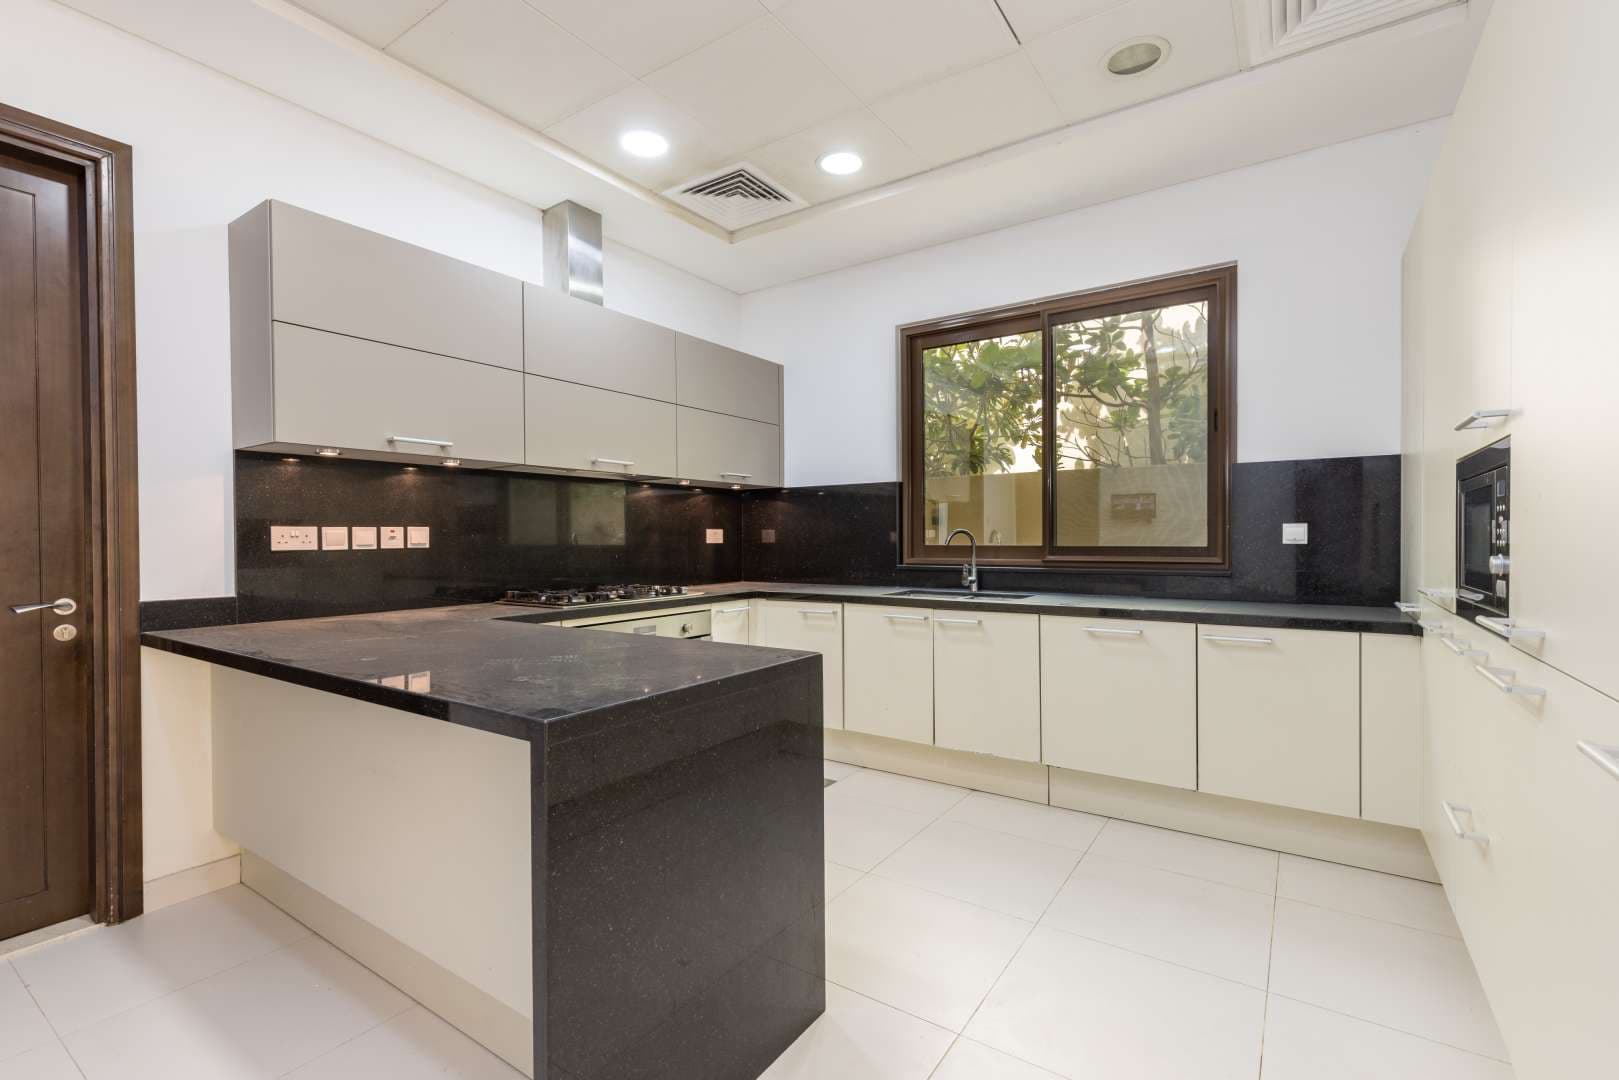 5 Bedroom Villa For Sale Meydan Gated Community Lp11612 17dfddda06d60b00.jpg